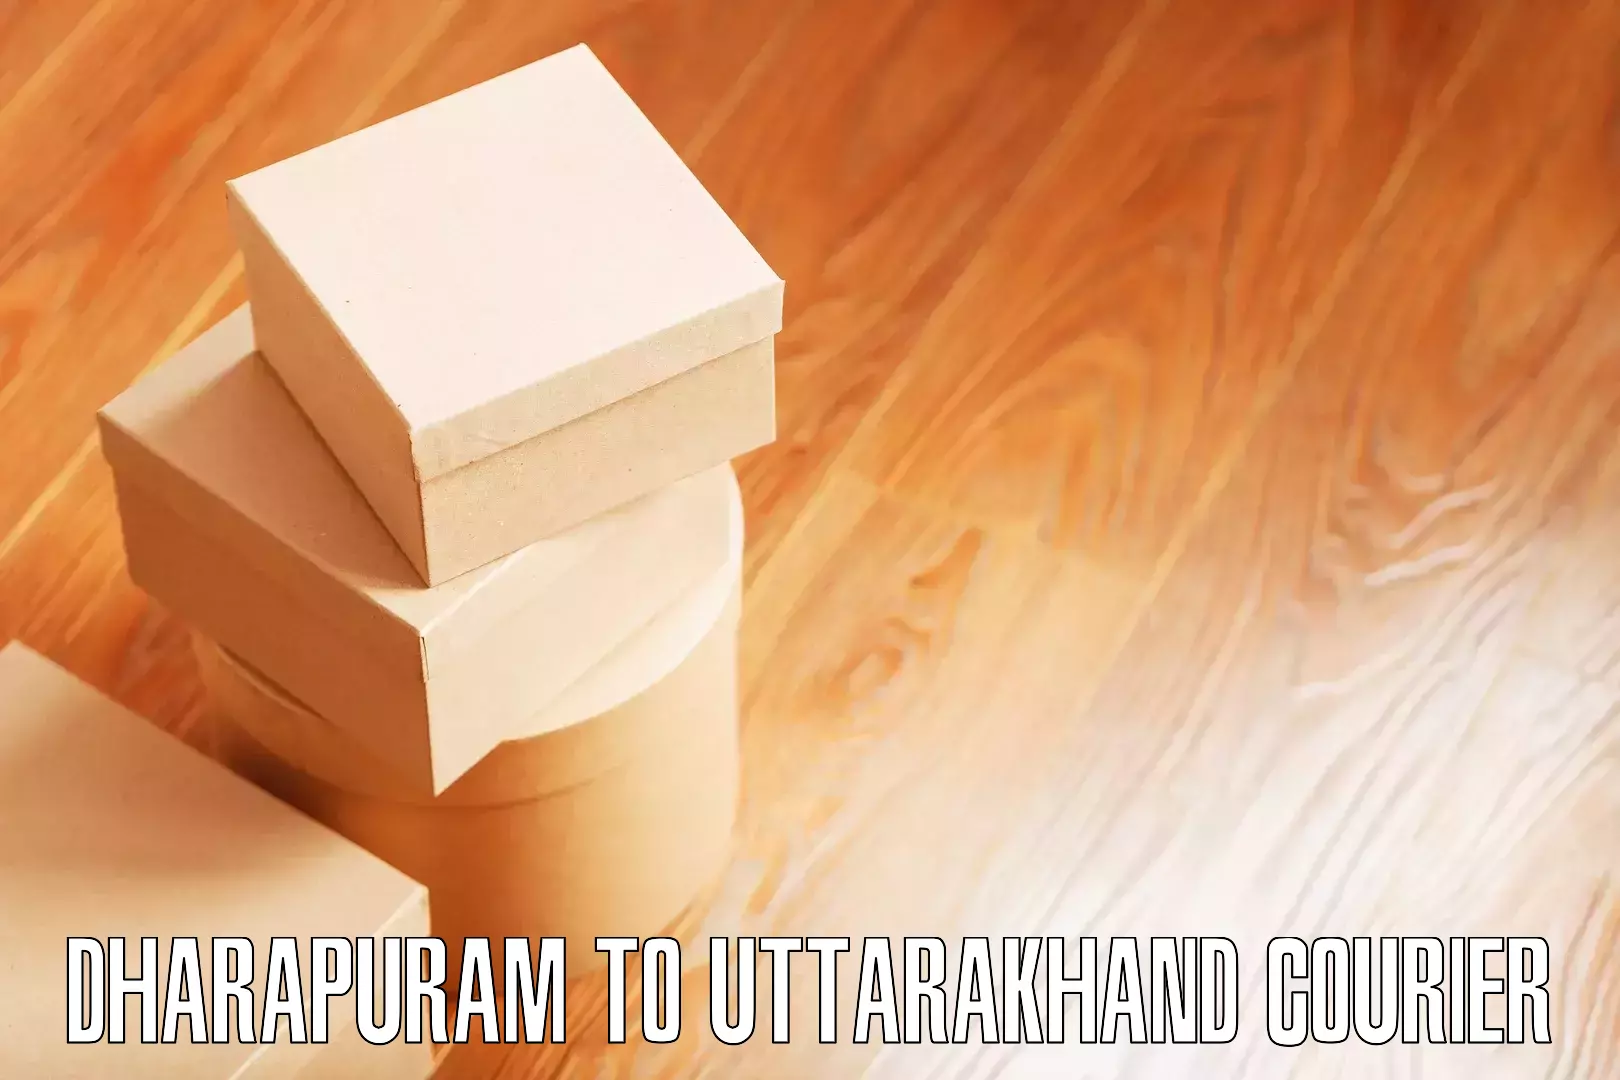 Furniture moving experts Dharapuram to Haldwani